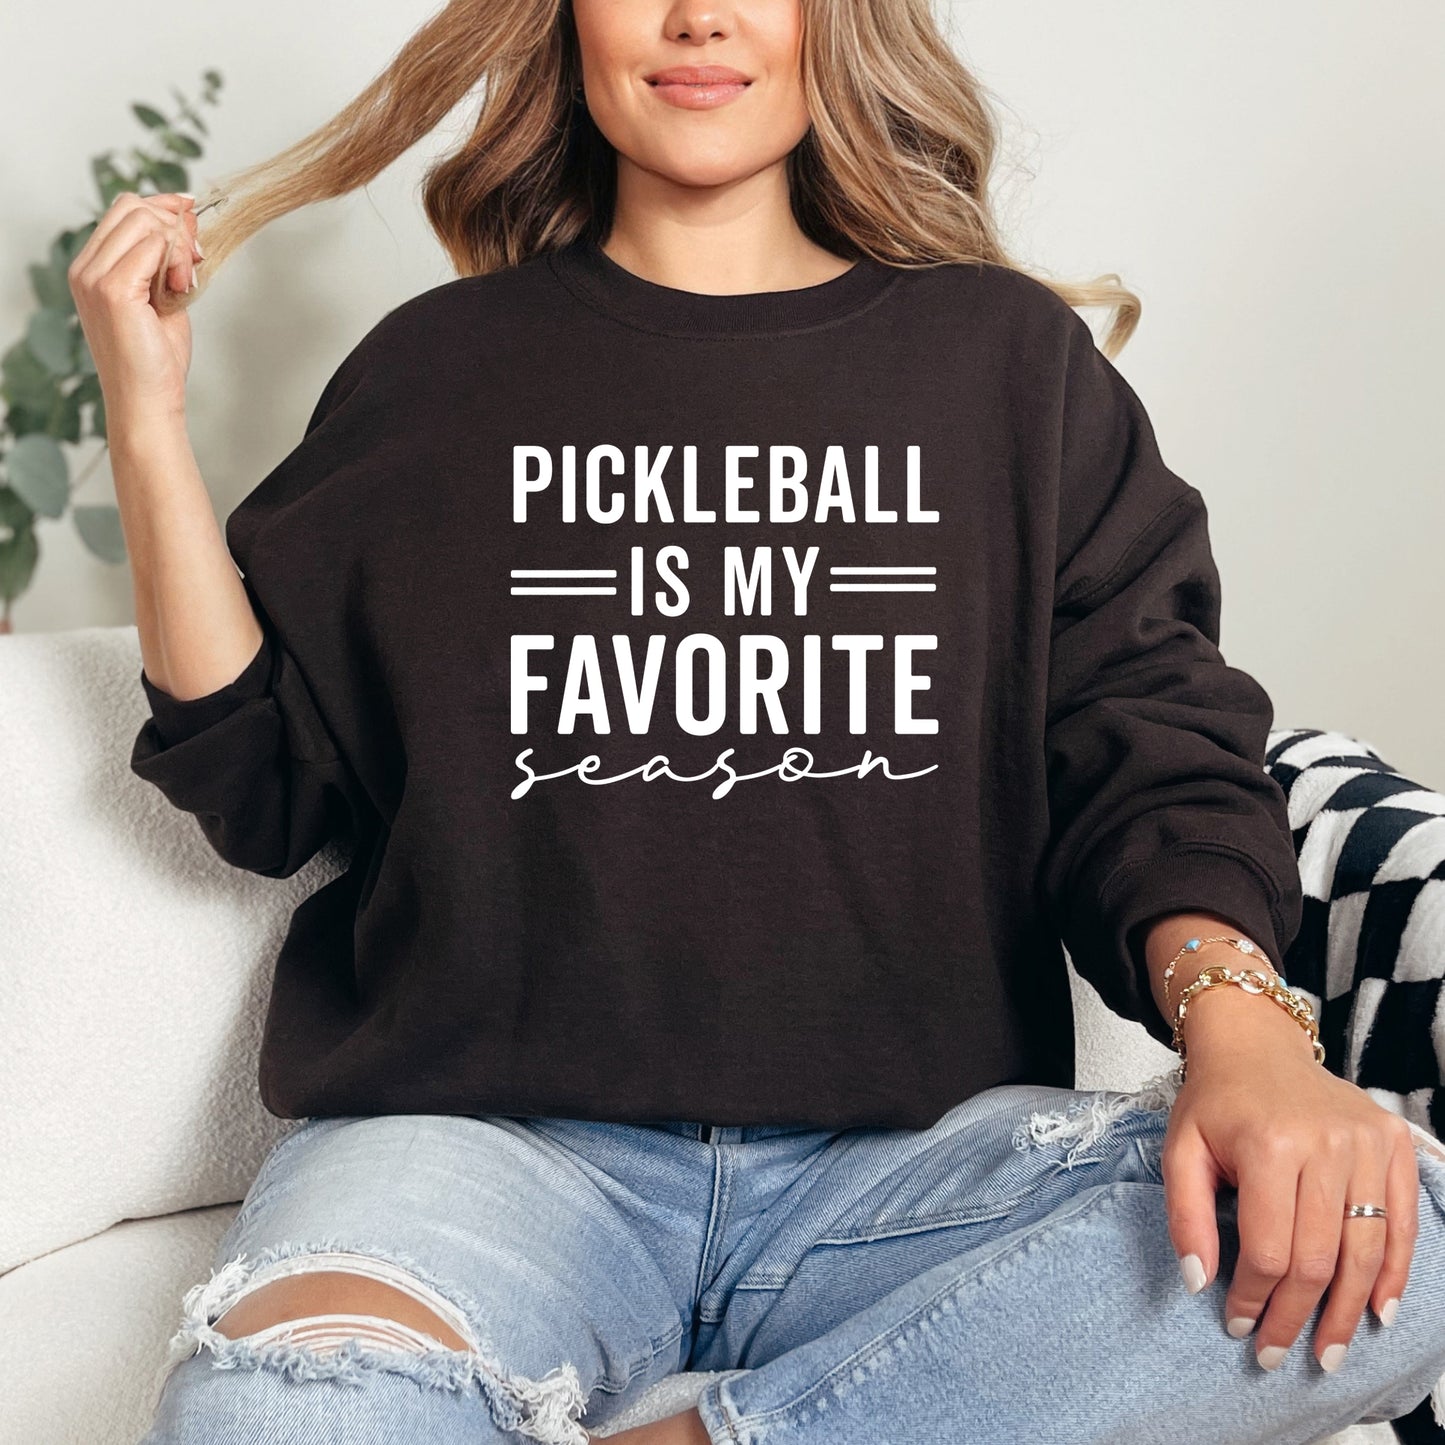 Pickleball Is My Favorite Season | Sweatshirt